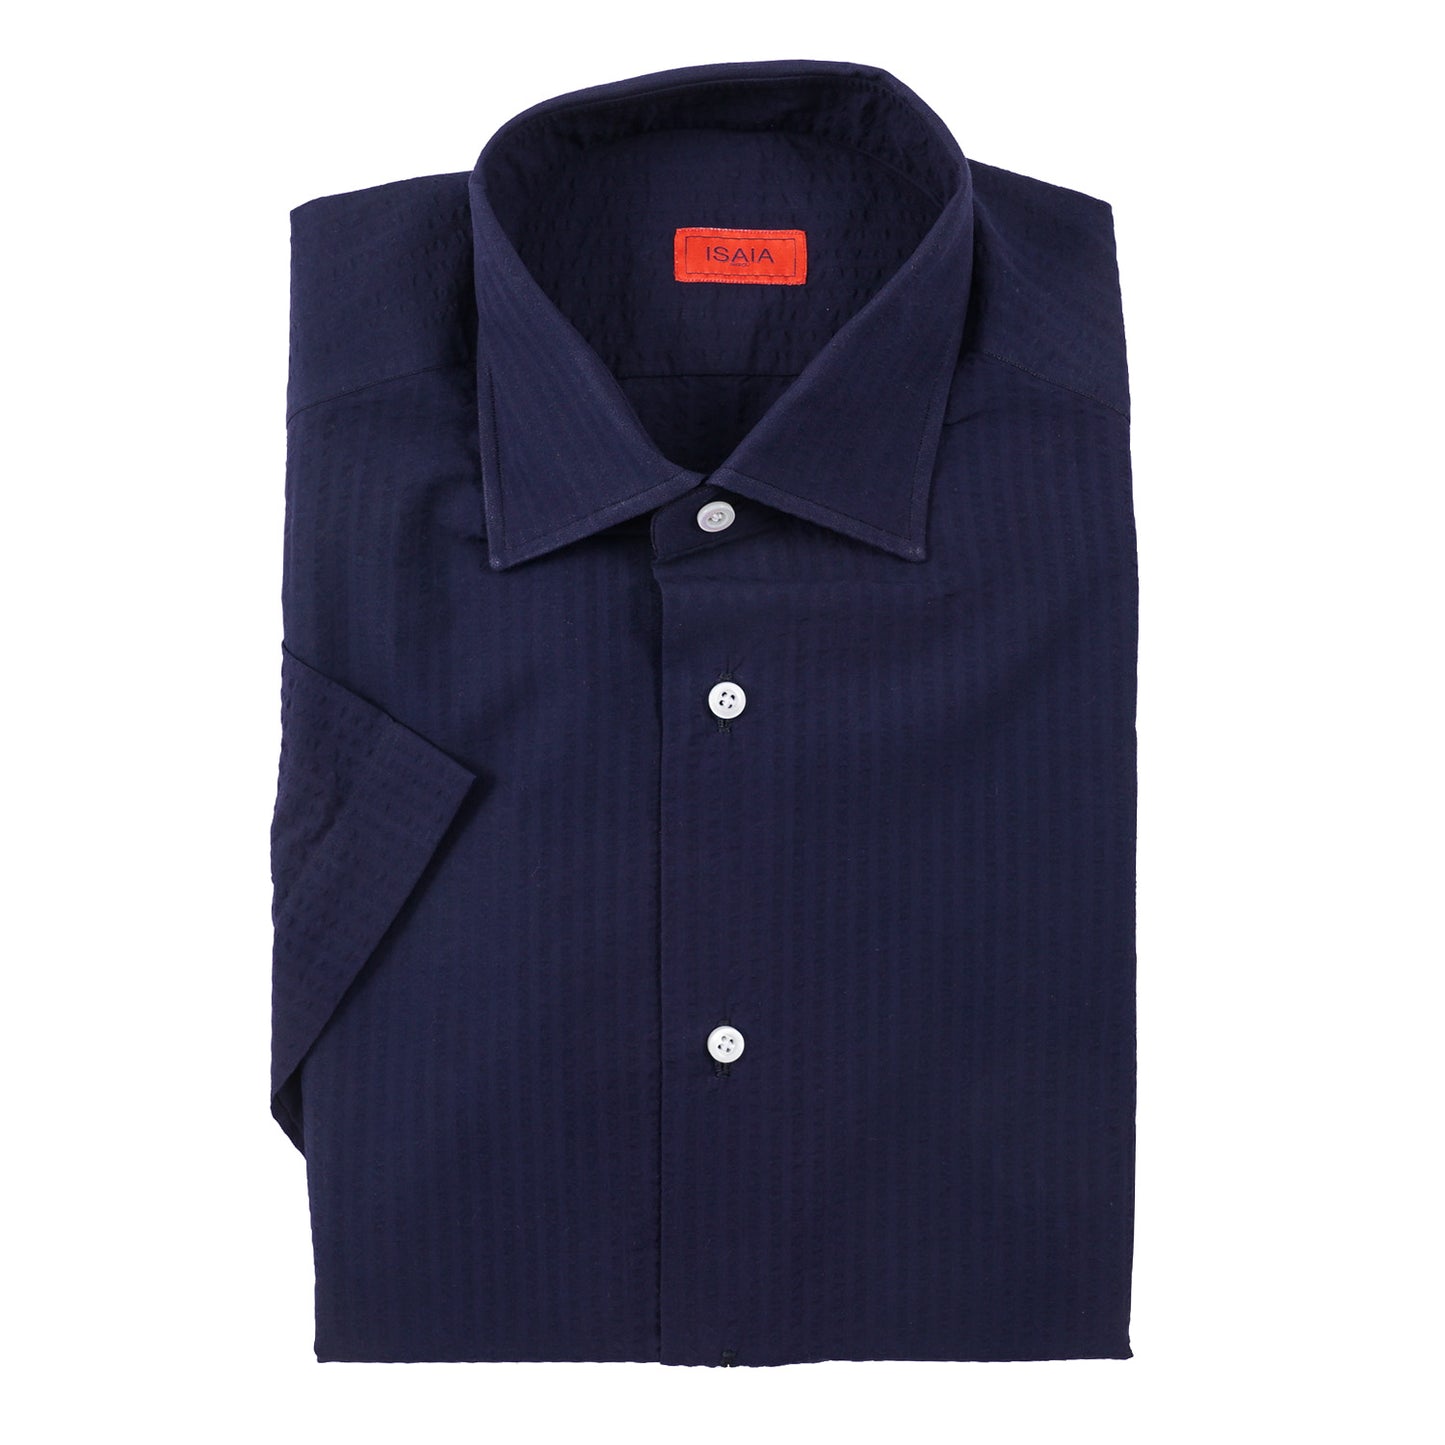 Isaia Short Sleeve Lightweight Cotton Shirt - Top Shelf Apparel